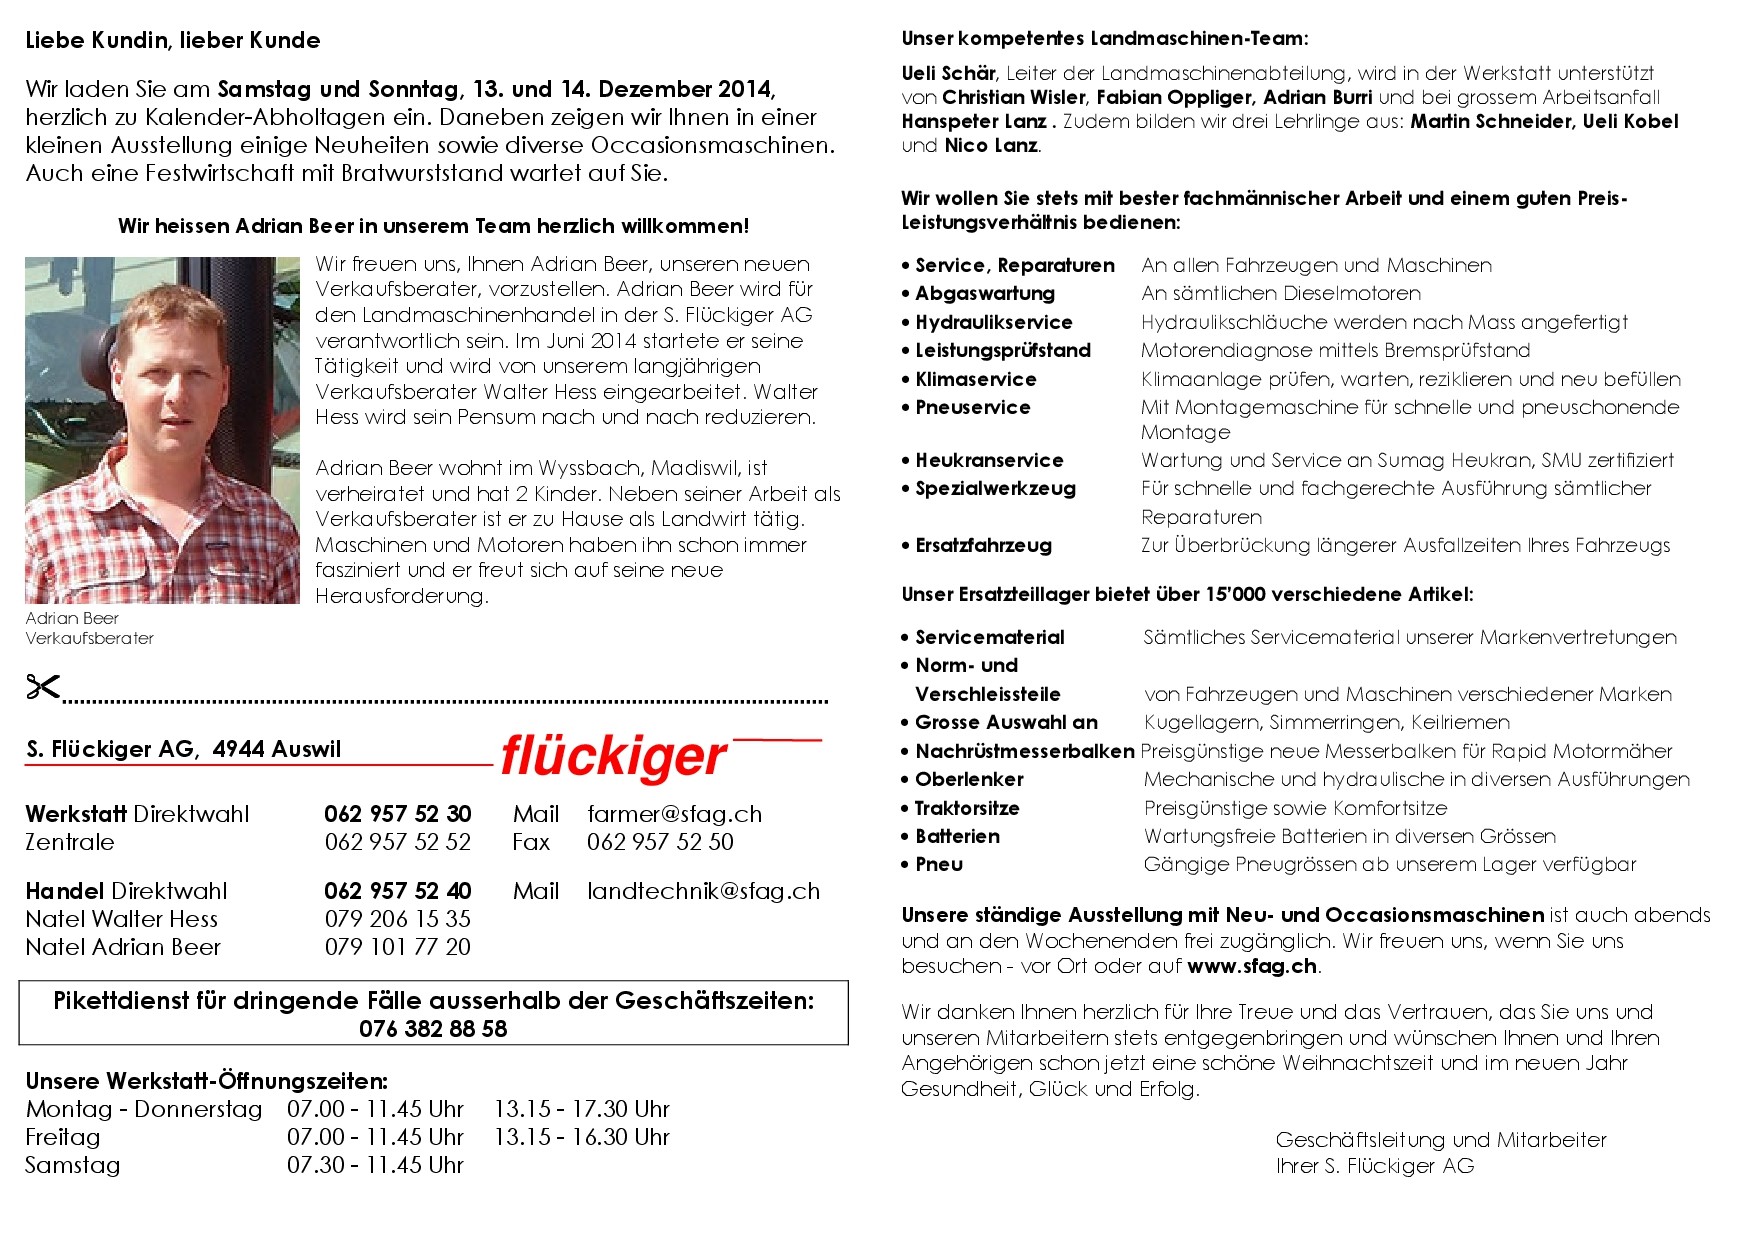 flückiger Landtechnik - Kalender-Abholtage 2014